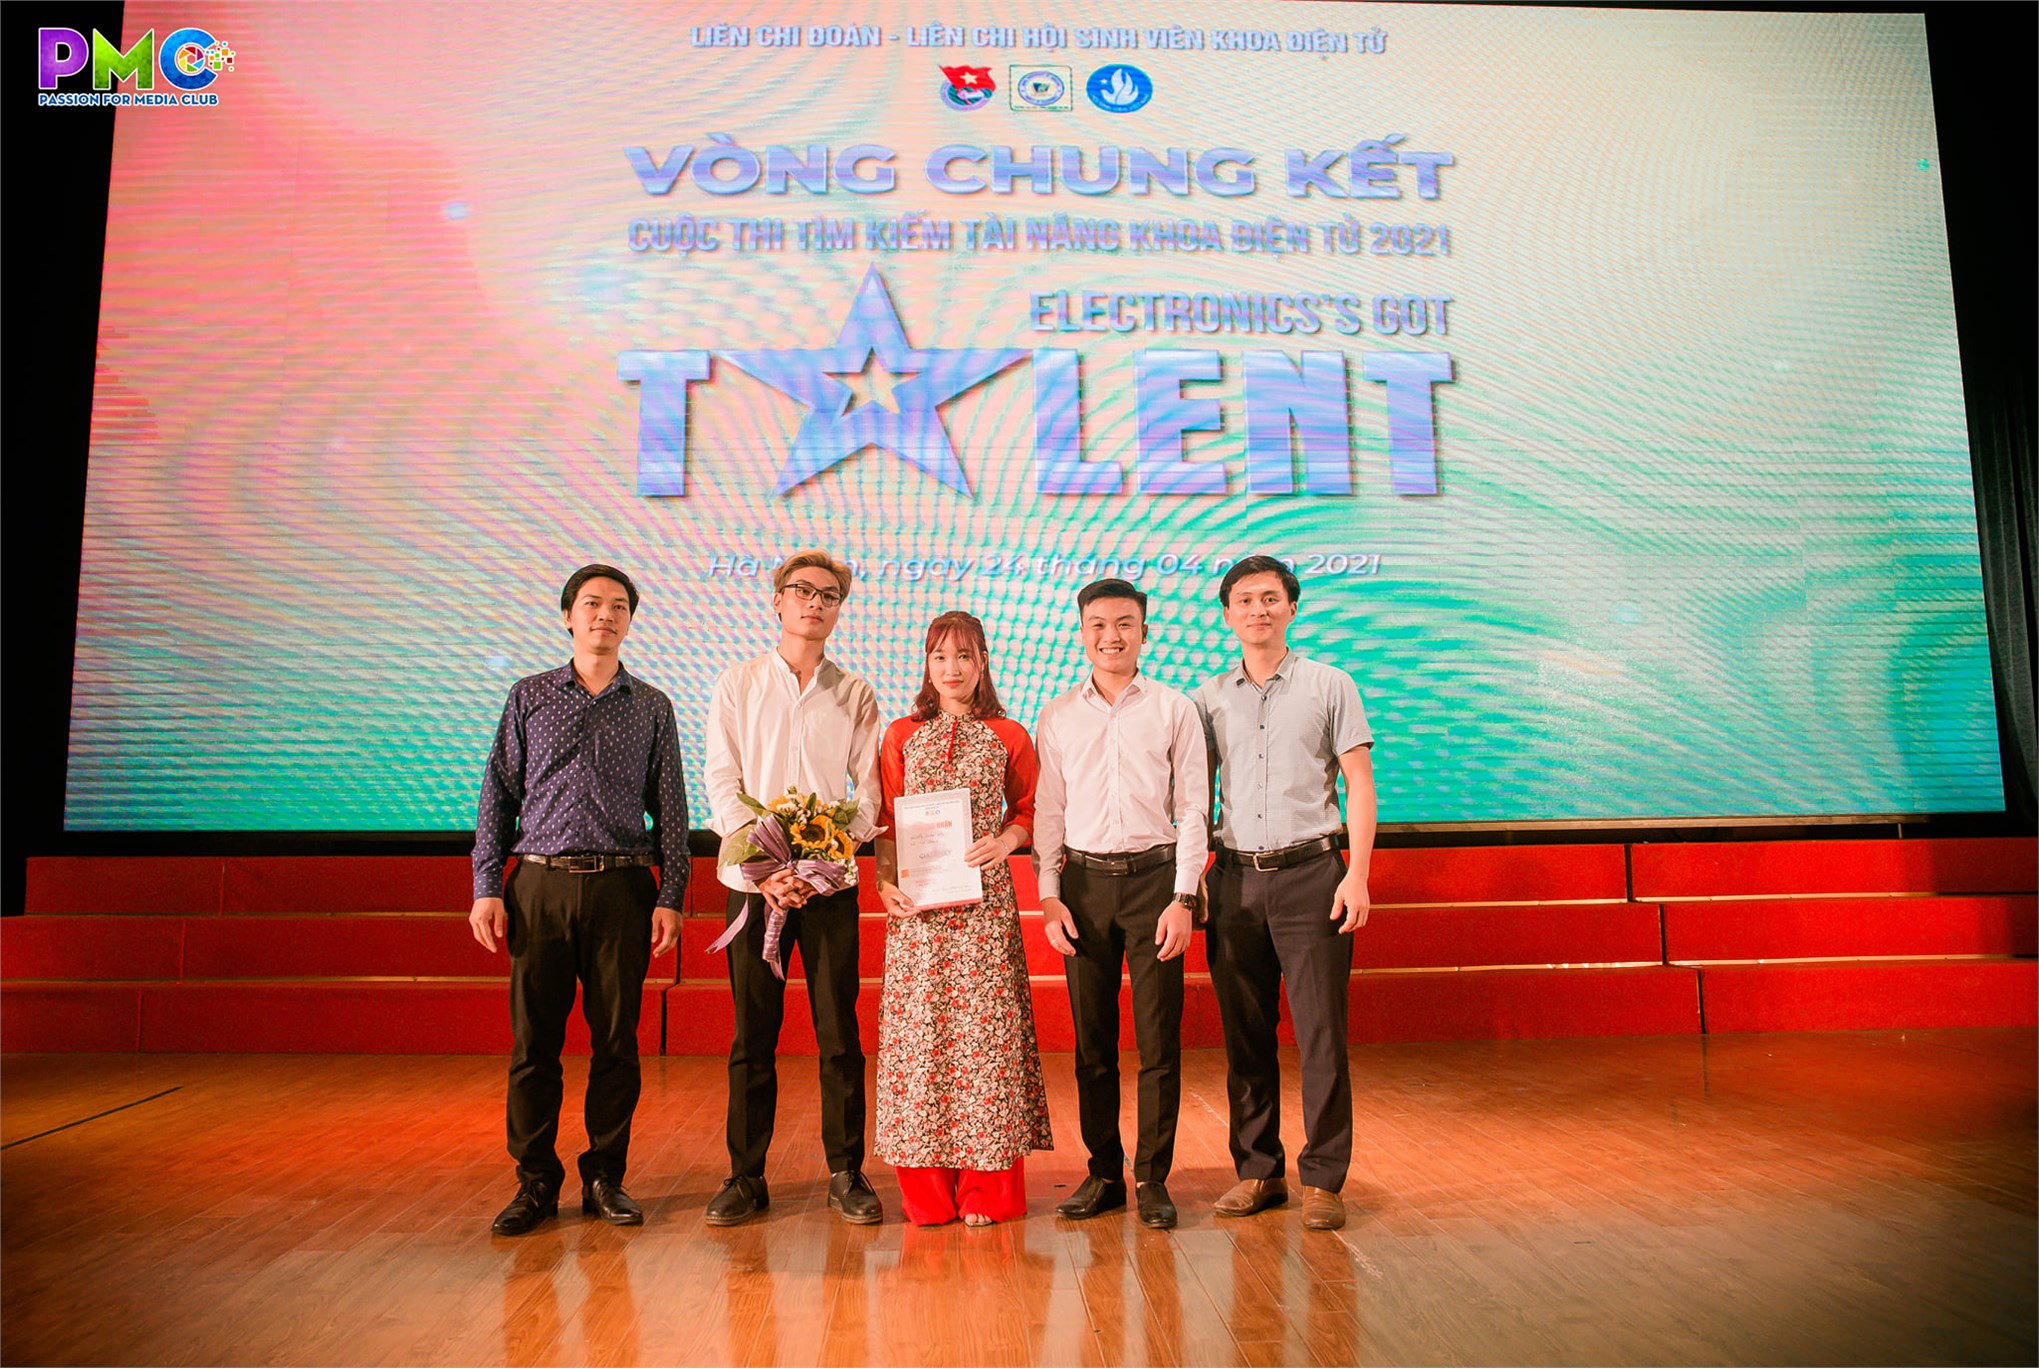 Vòng chung kết cuộc thi `Tìm kiếm tài năng khoa Điện tử 2021 - Electronic's Got Talent`